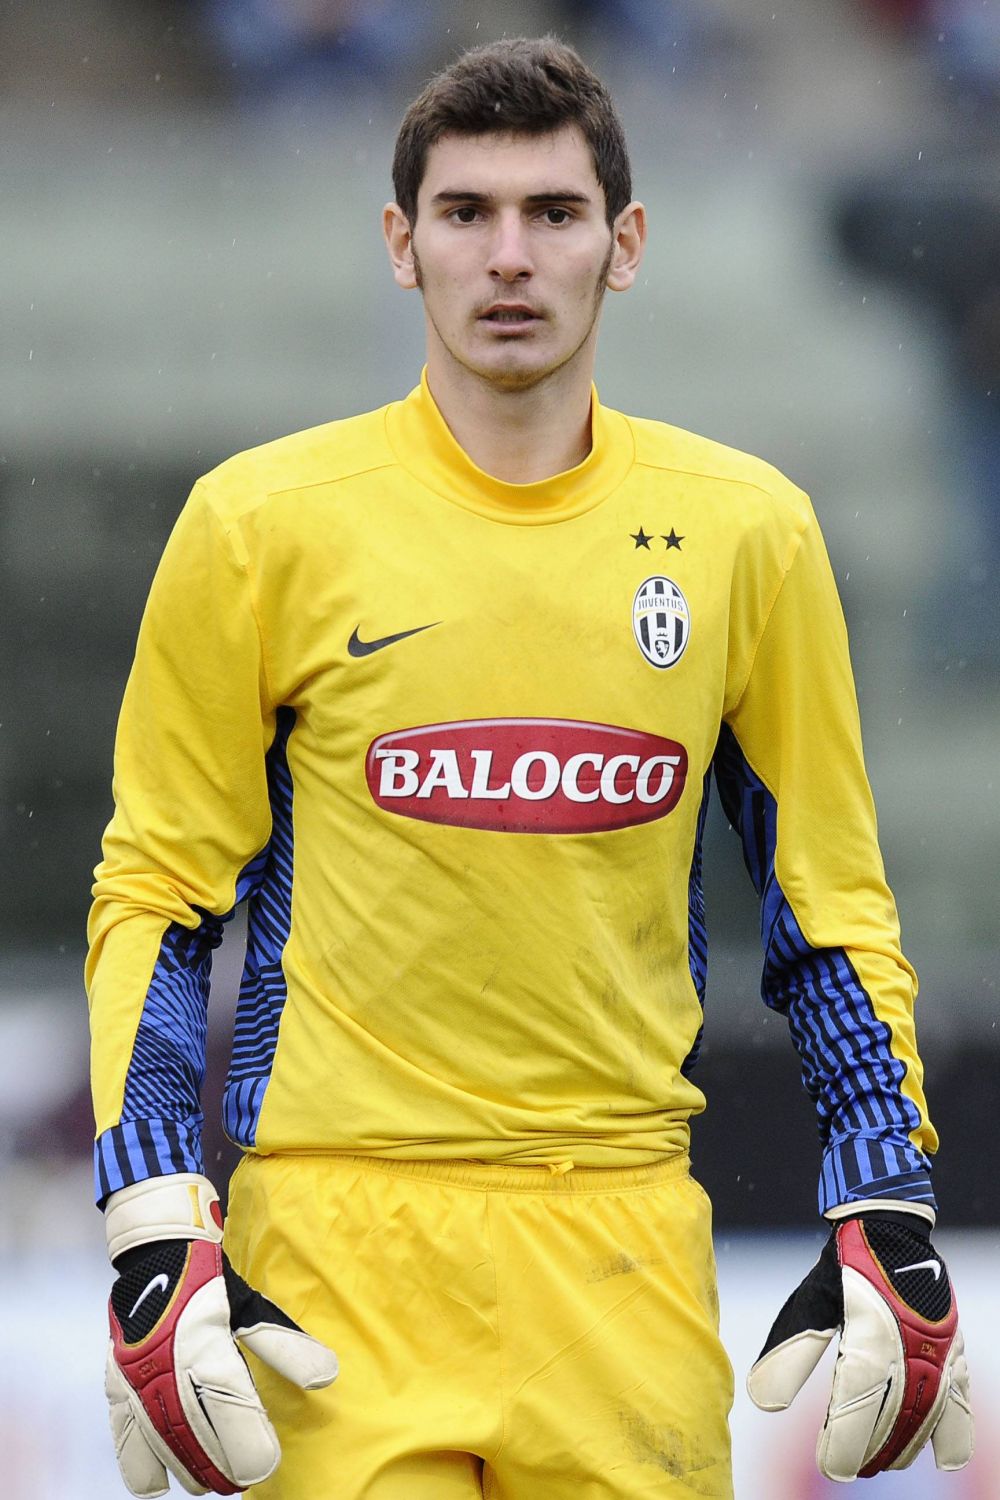 Laurențiu Brănescu a semnat în străinătate! Unde s-a transferat portarul care a fost legitimat 10 ani la Juventus Torino: ”Kalós írthes, Laurențiu!”_5